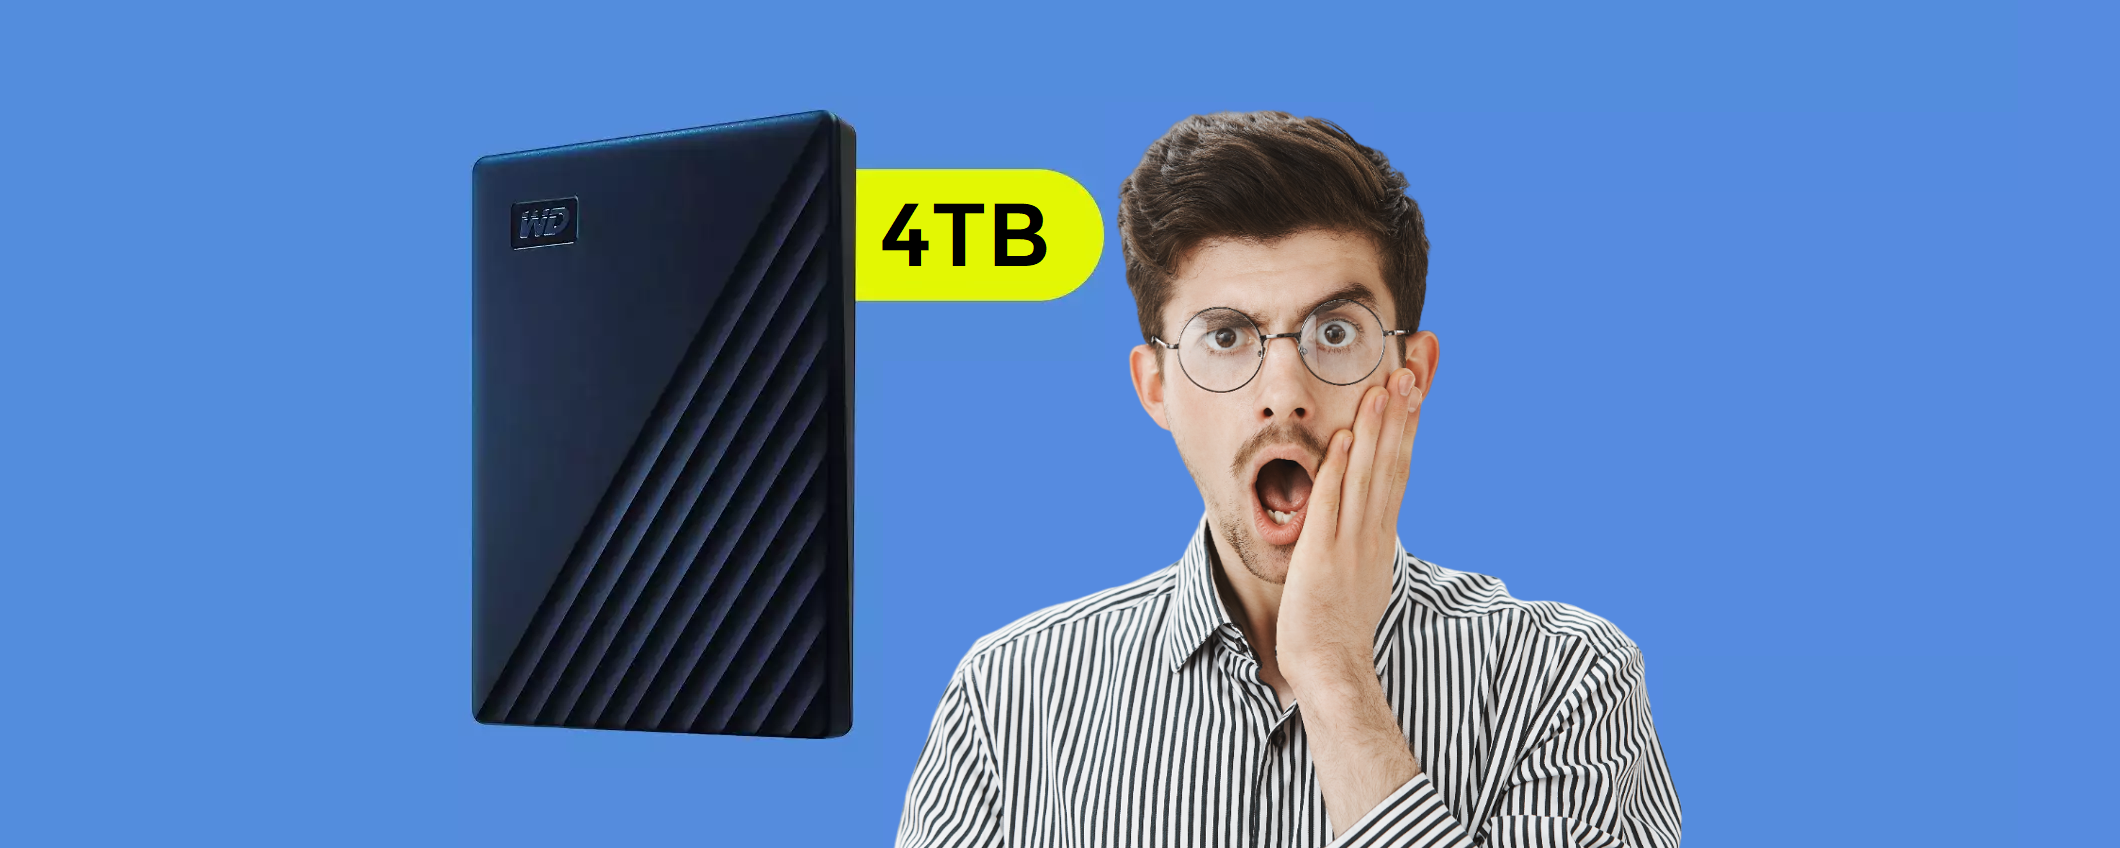 Hard disk esterno 4TB per Mac: bastano 117€ grazie a 2 SCONTI